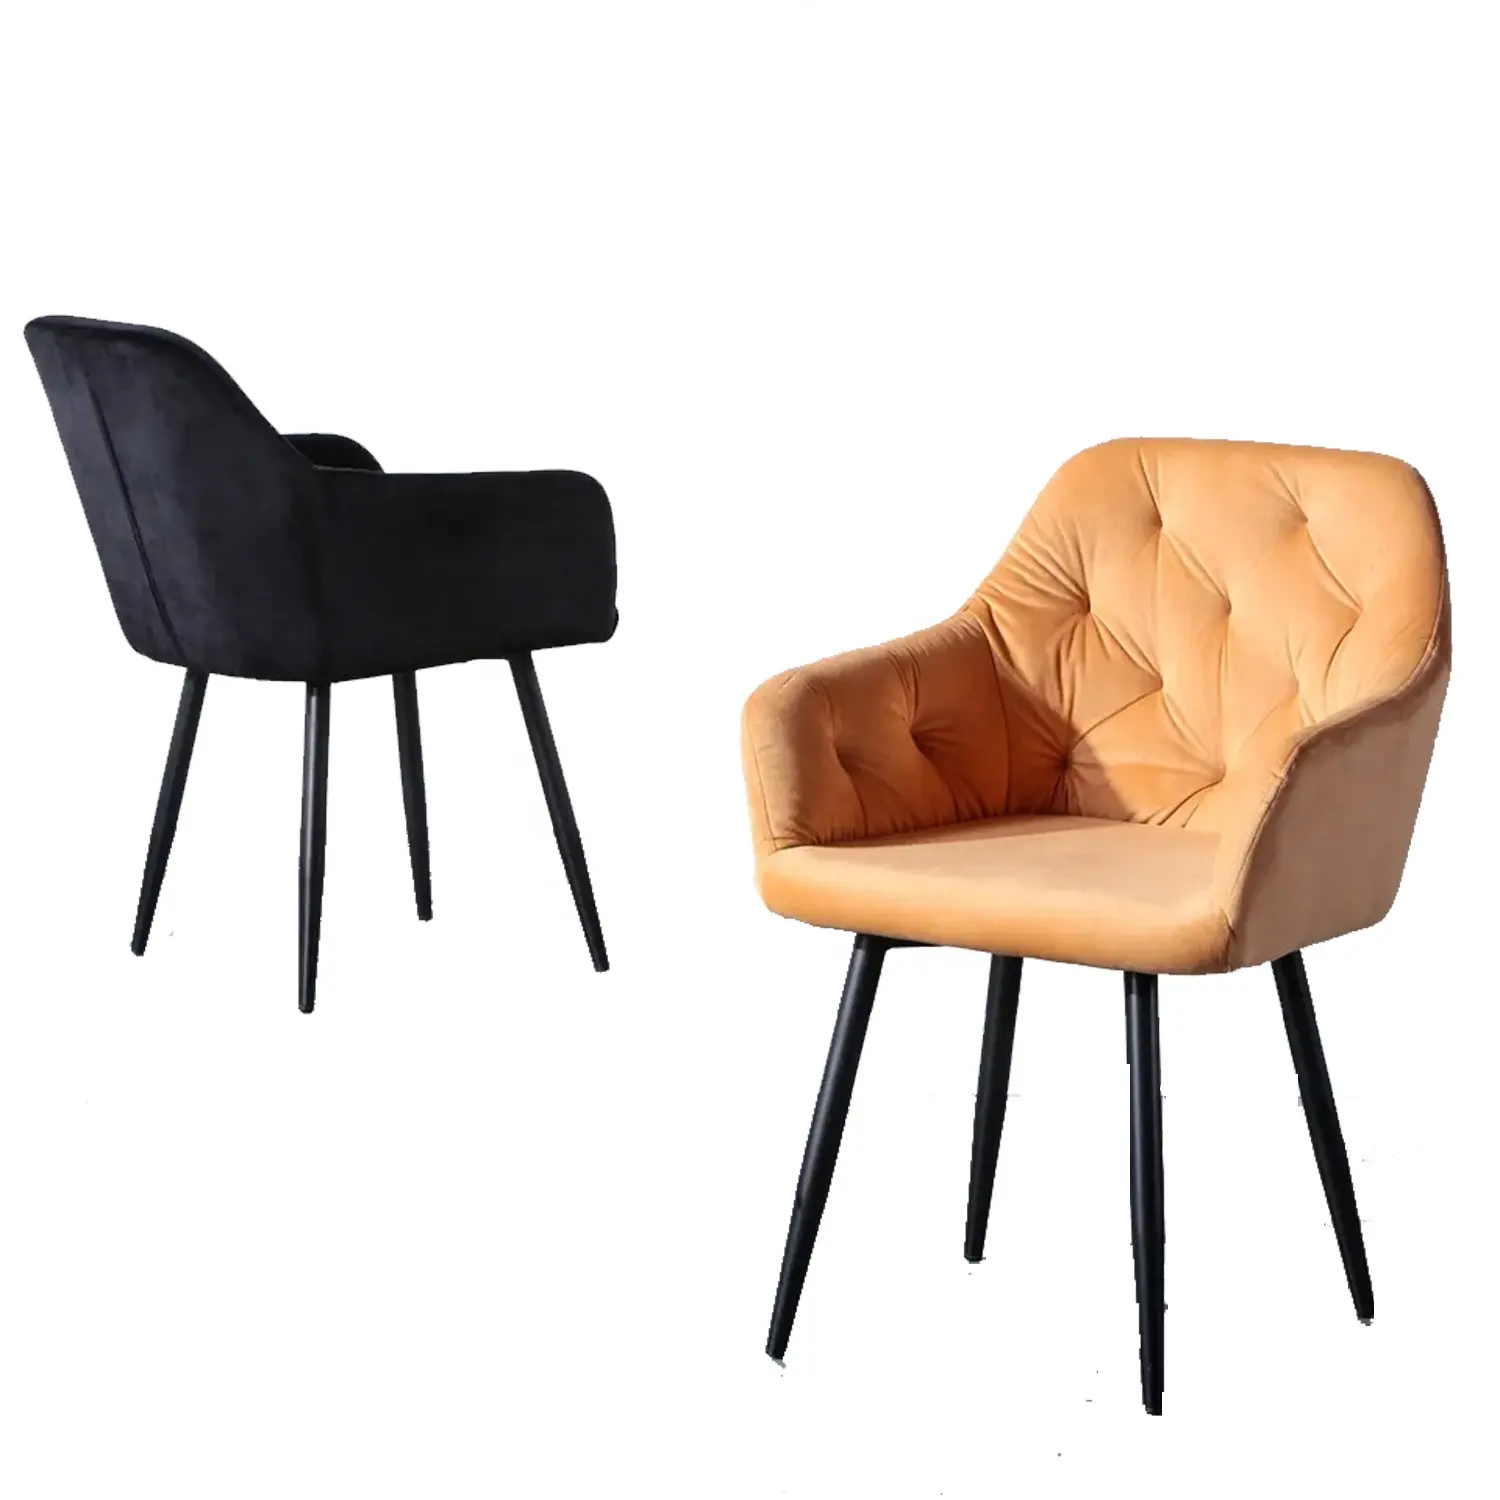 Lüks İskandinav yemek mobilyaları Sillas Metal bacak döşemelik kumaş Modern siyah kadife yemek sandalyeleri yemek odası restoran için